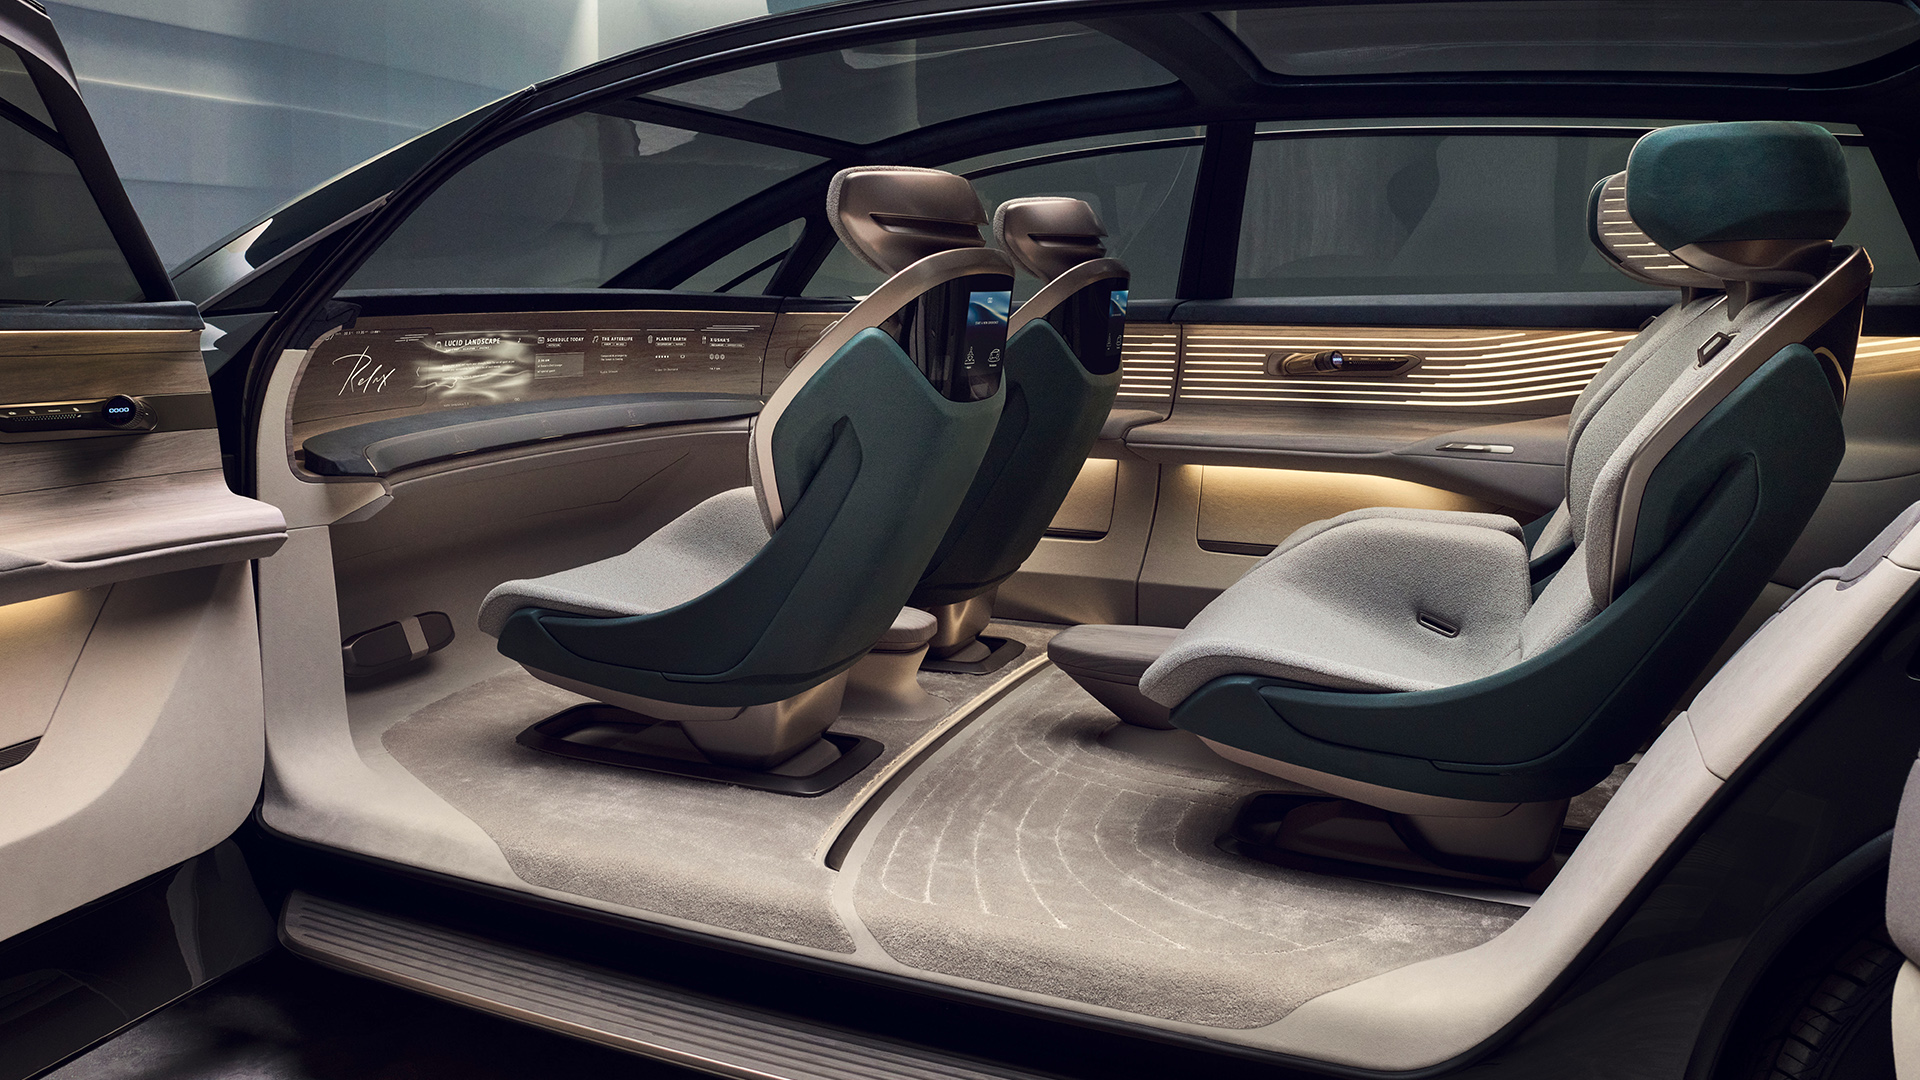 Kupeen i Audi urbansphere concept sett gjennom de åpne dørene.